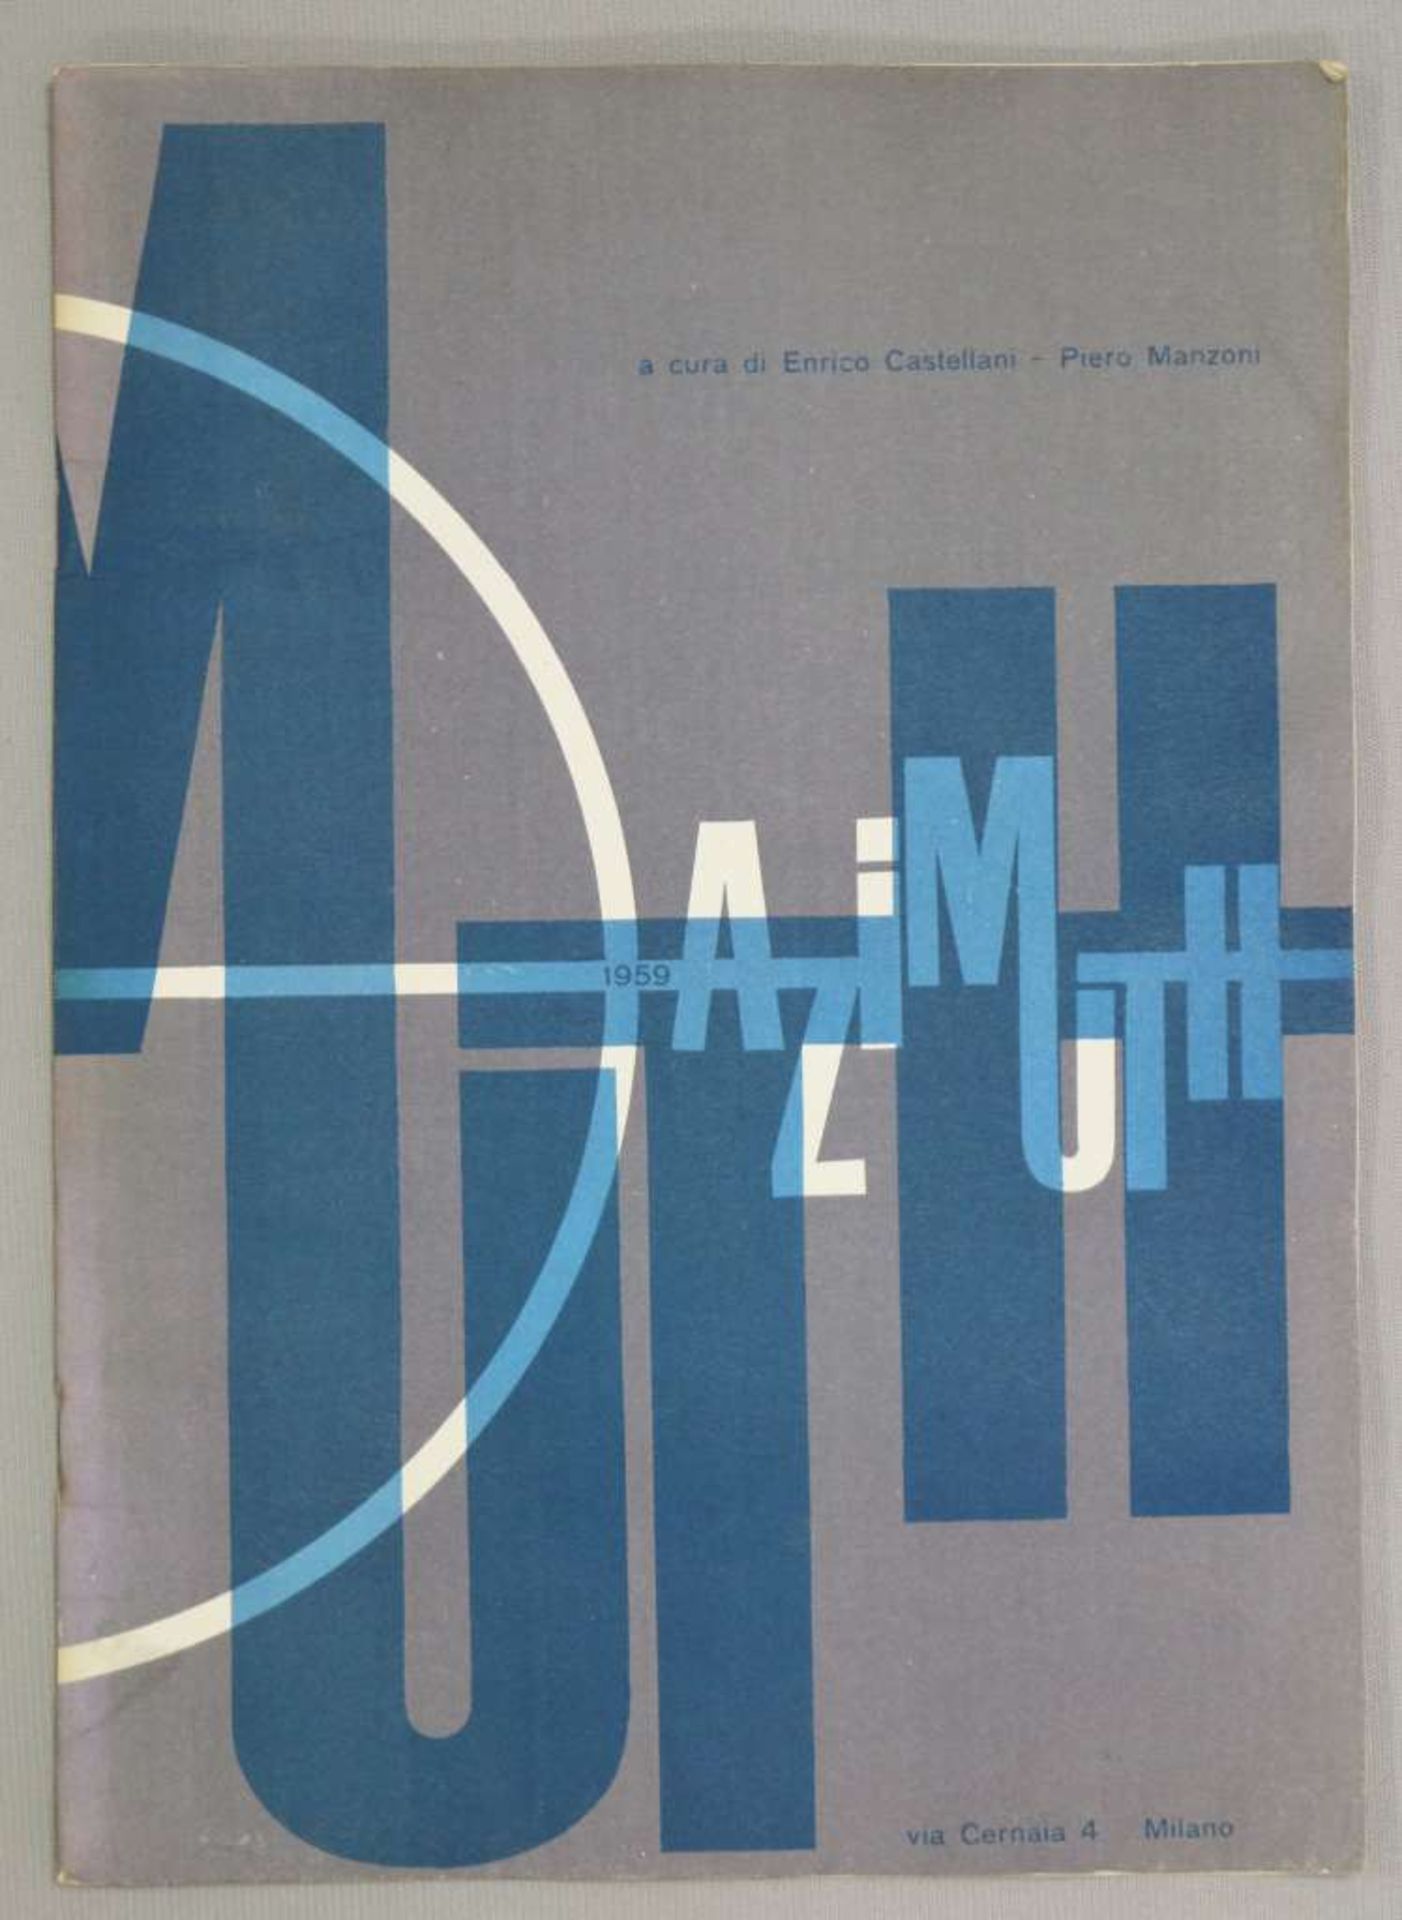 AZIMUTH - MANZONI-CASTELLANI, erste Nr. der von Enrico Castellani und Piero Manzoni in Mailand